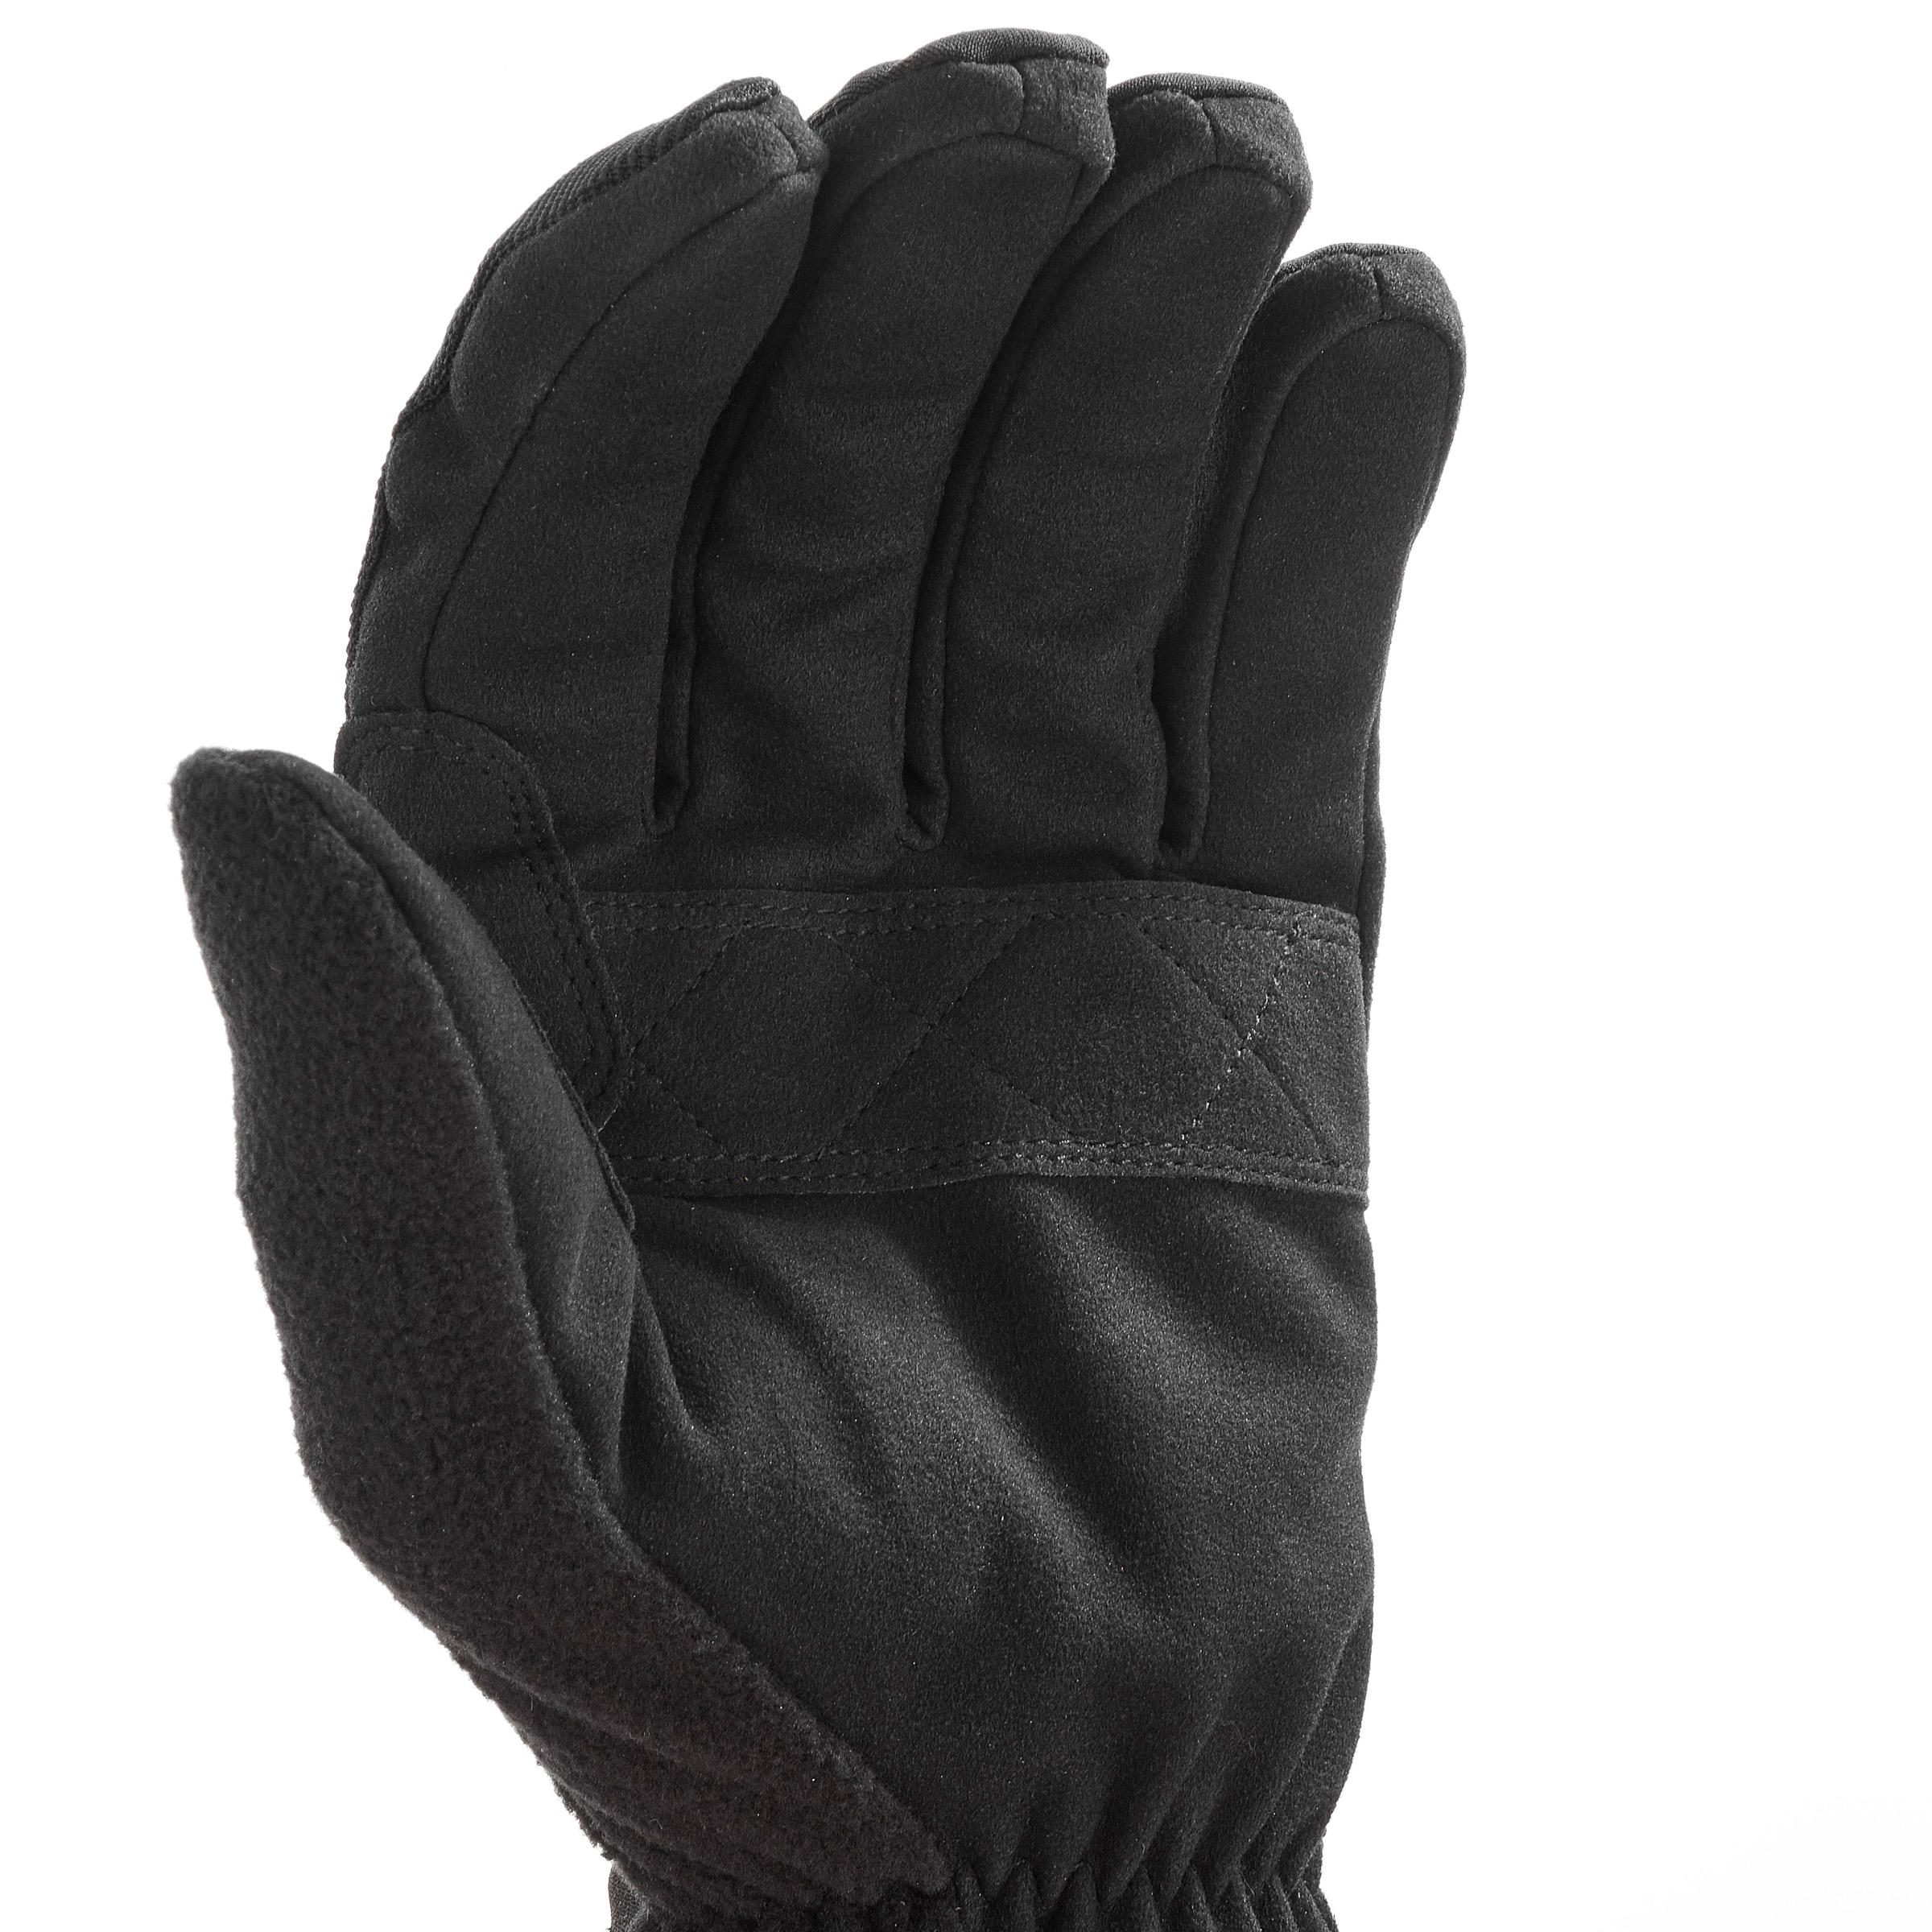 Men's Cross-Country Ski Gloves | XC S LYNX - Black 7/9